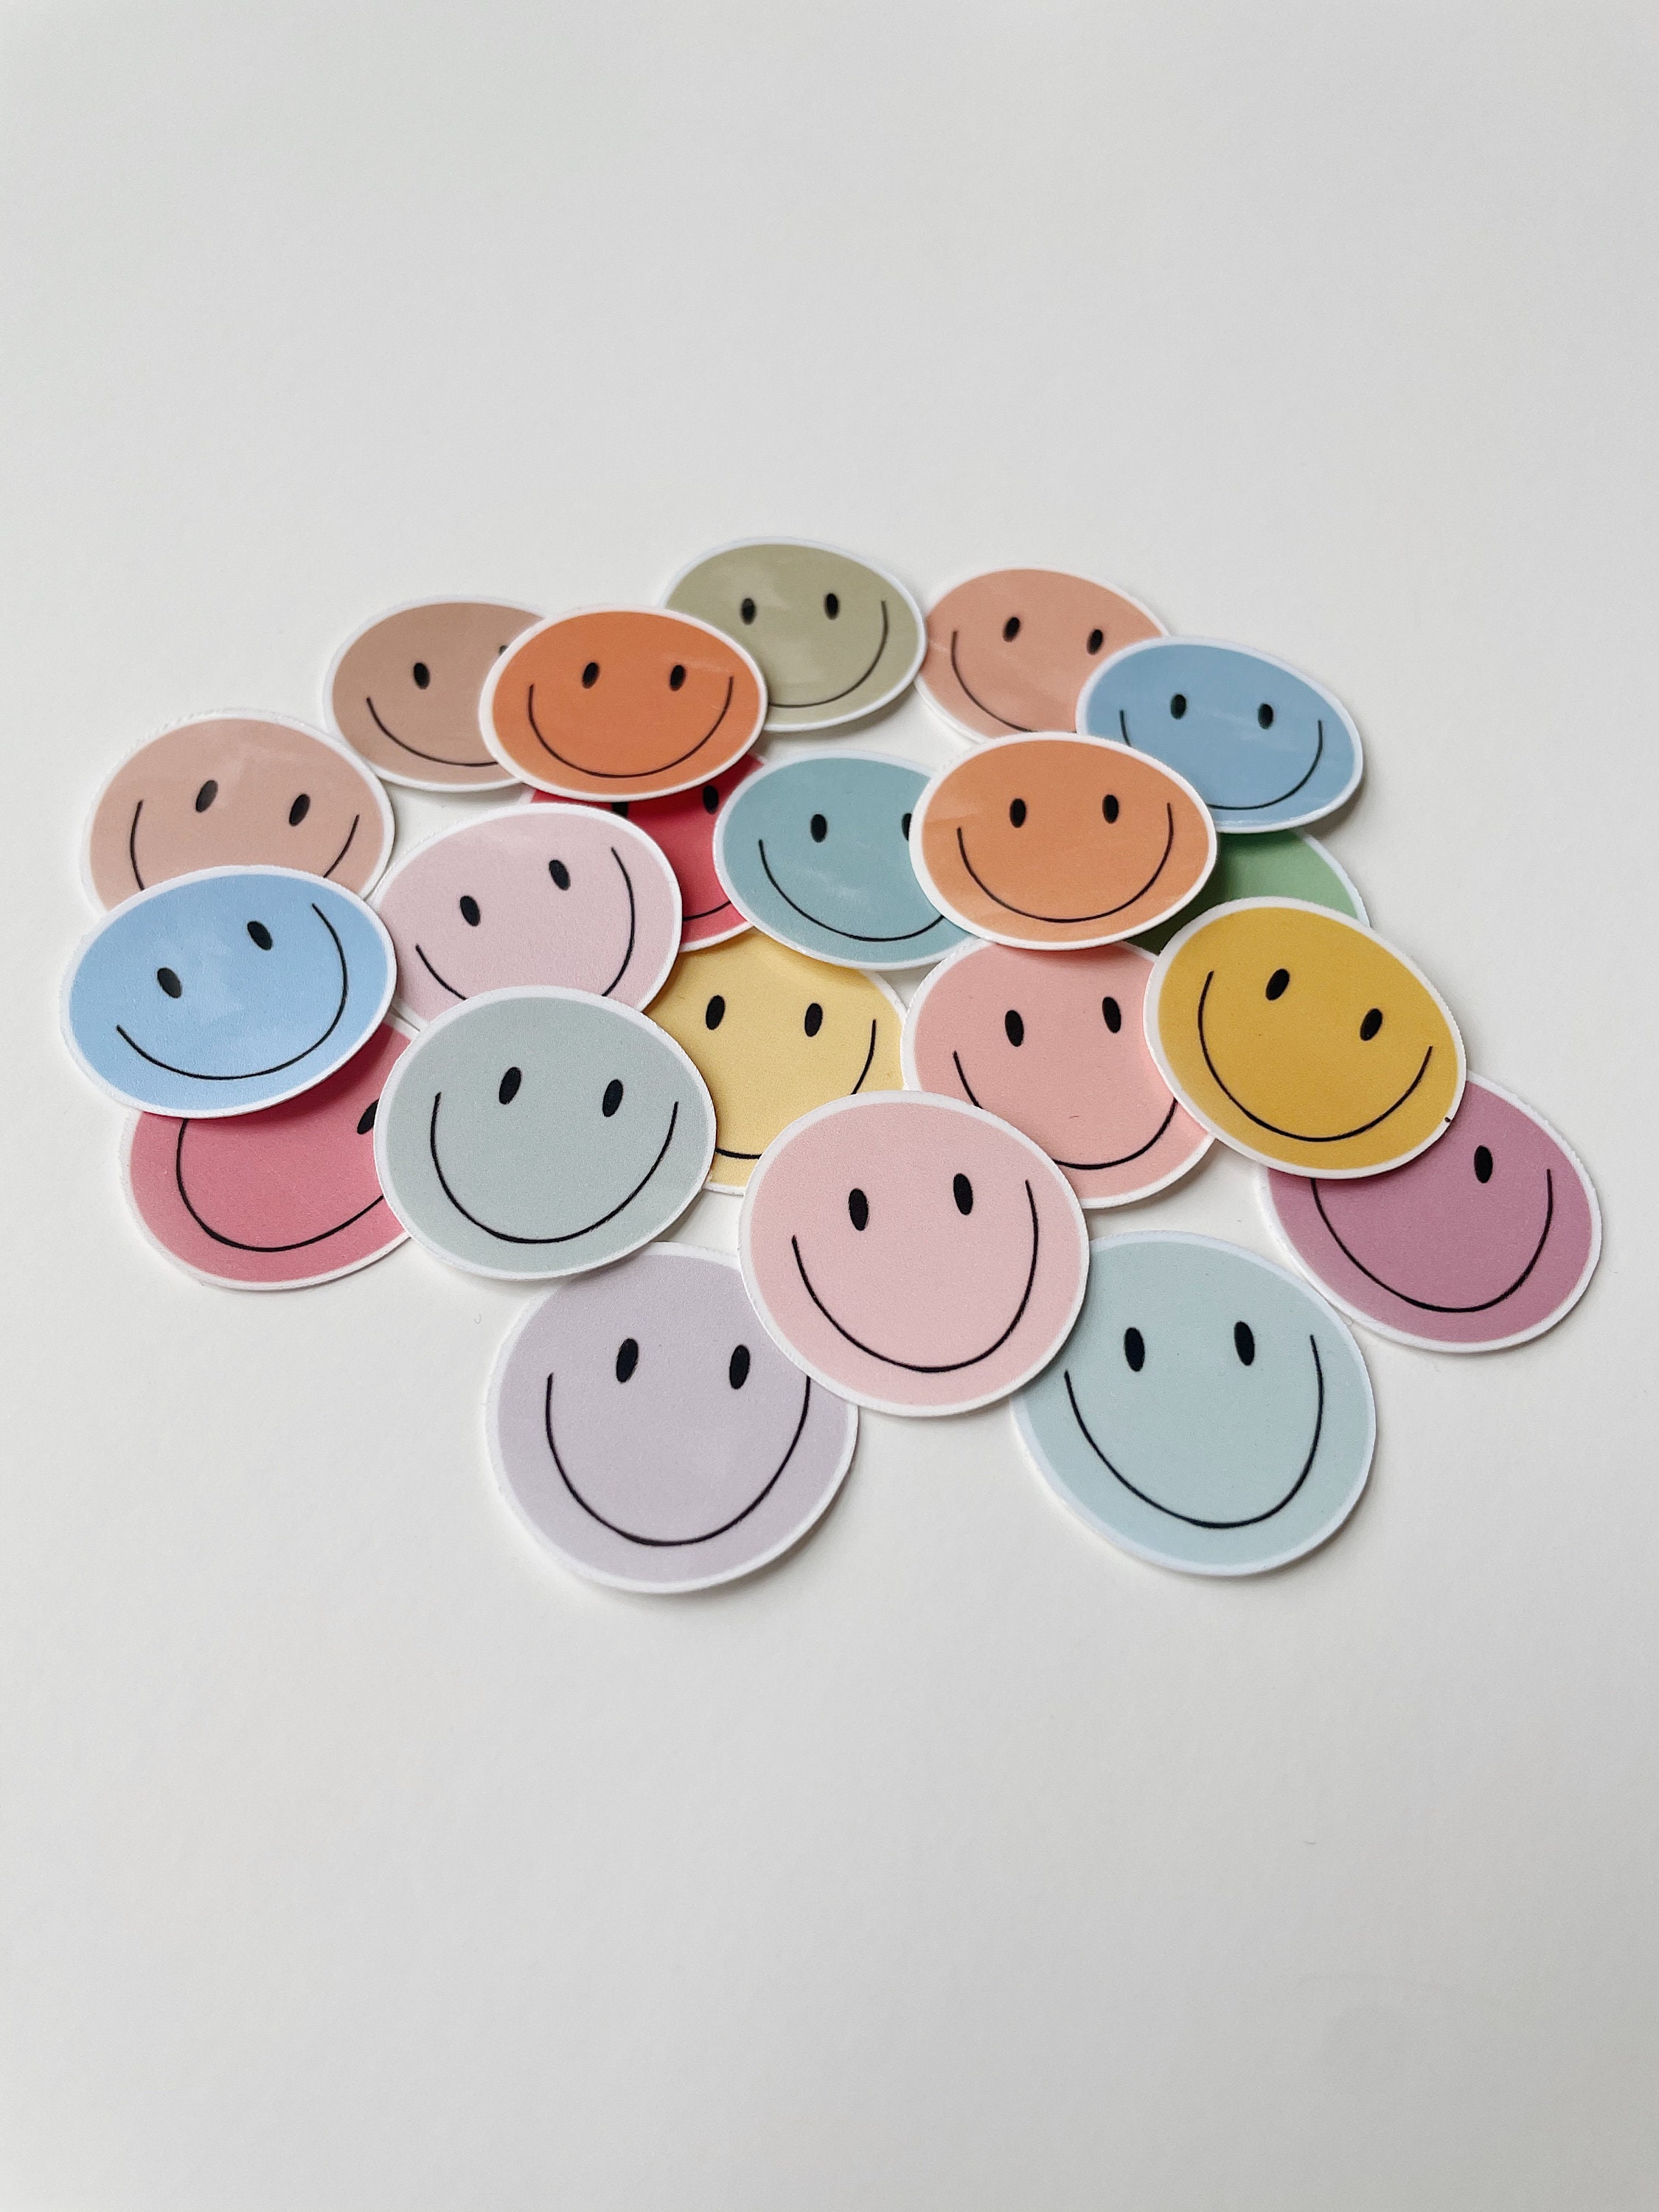 Smiley Face Sticker for Sale by Engravecraze